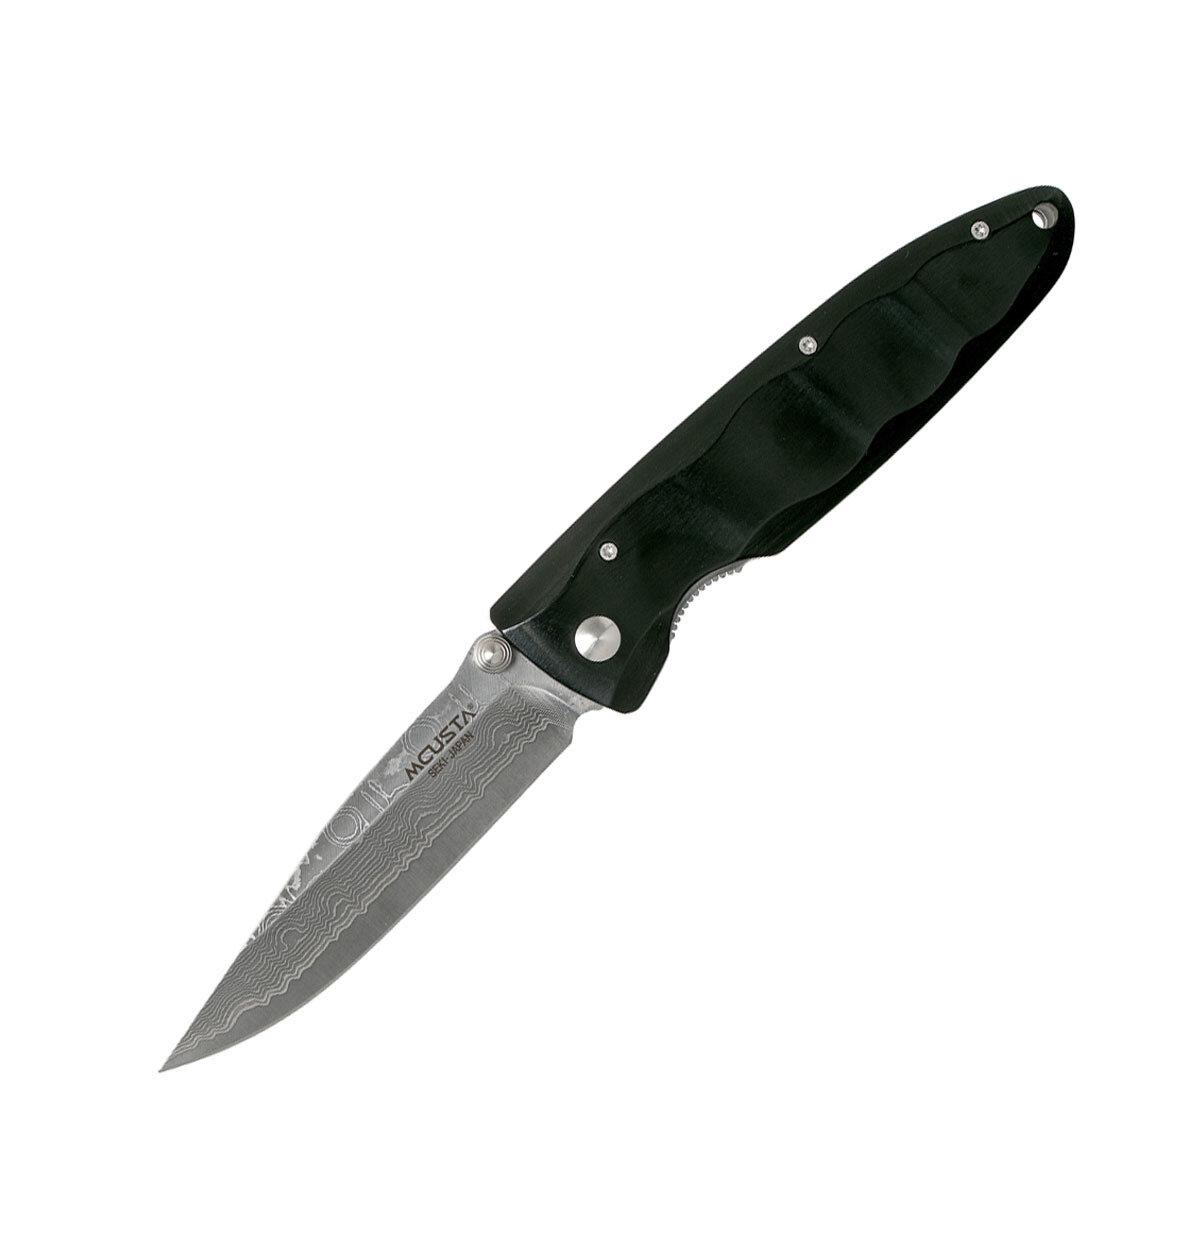 Нож складной MCUSTA VG-10 85/193 в обкладке из дамасской стали (32 слоя), Black Pakkawood, клипса